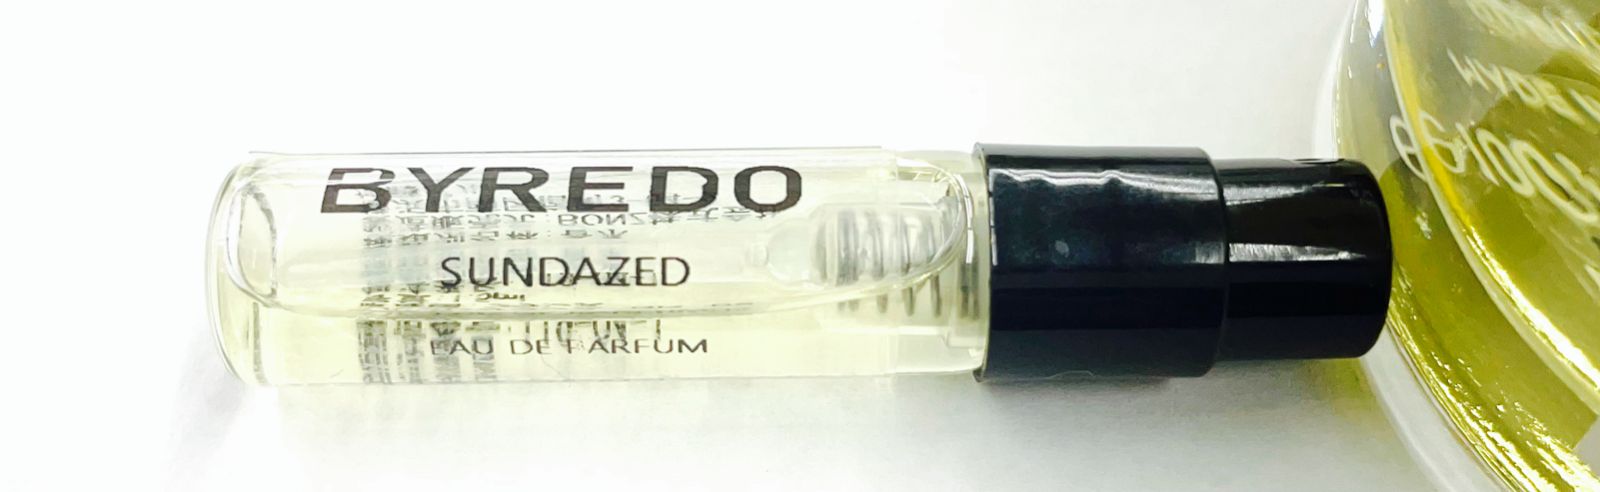 BYREDO バイレード サンデイズド 香水 1.5ml バレード - セット割実施